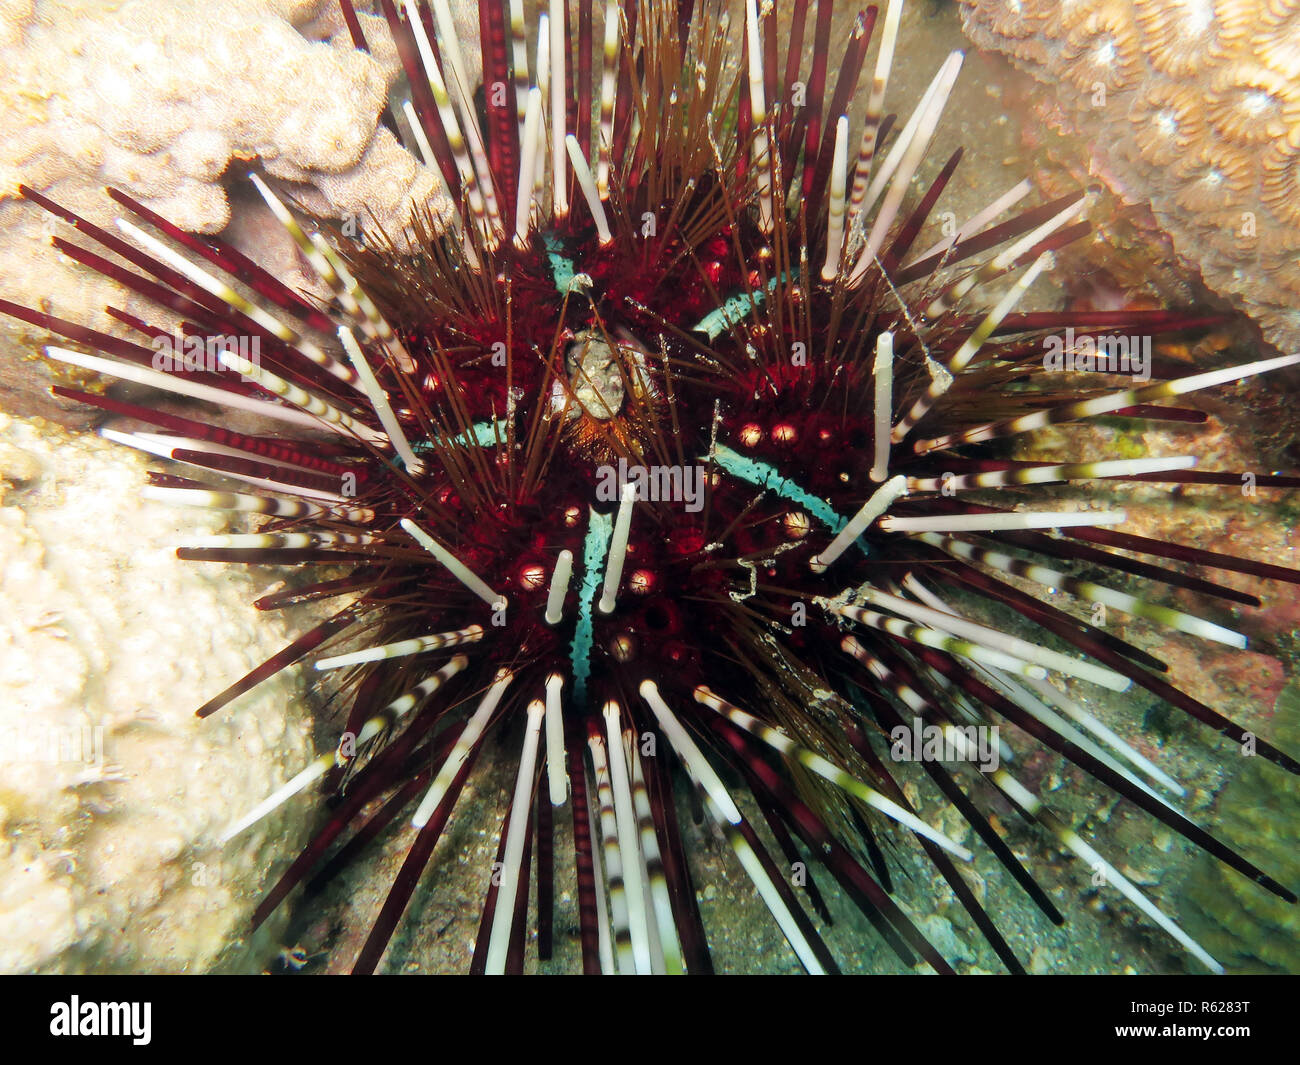 pencil tiara sea urchin (echinothrix calamaris),calamaris sea urchin Stock Photo